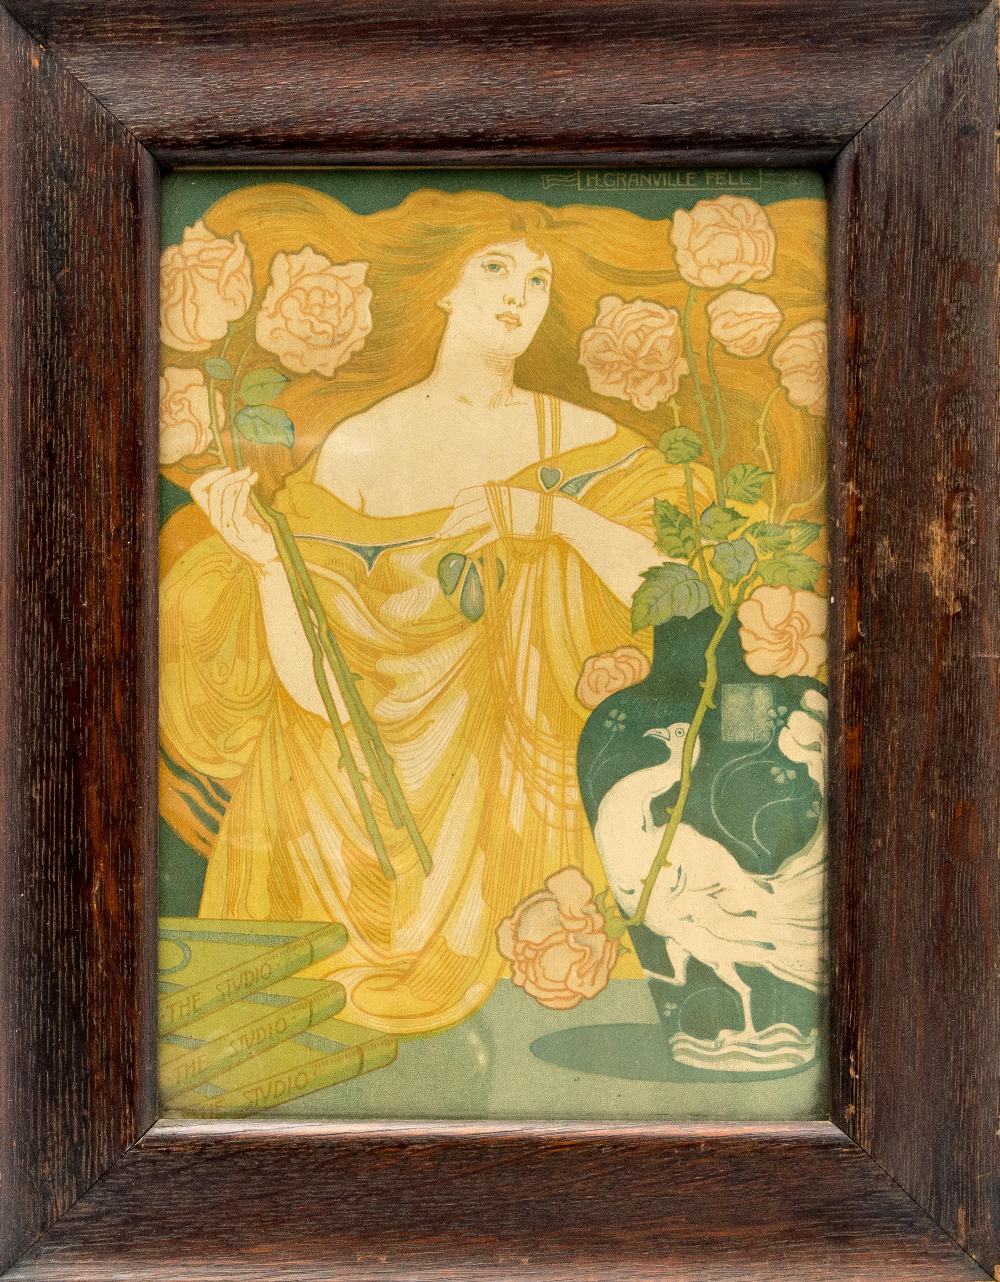 Herbert Granville Fell (1872-1951), Studio Girl, print, 28cm x 20cm,